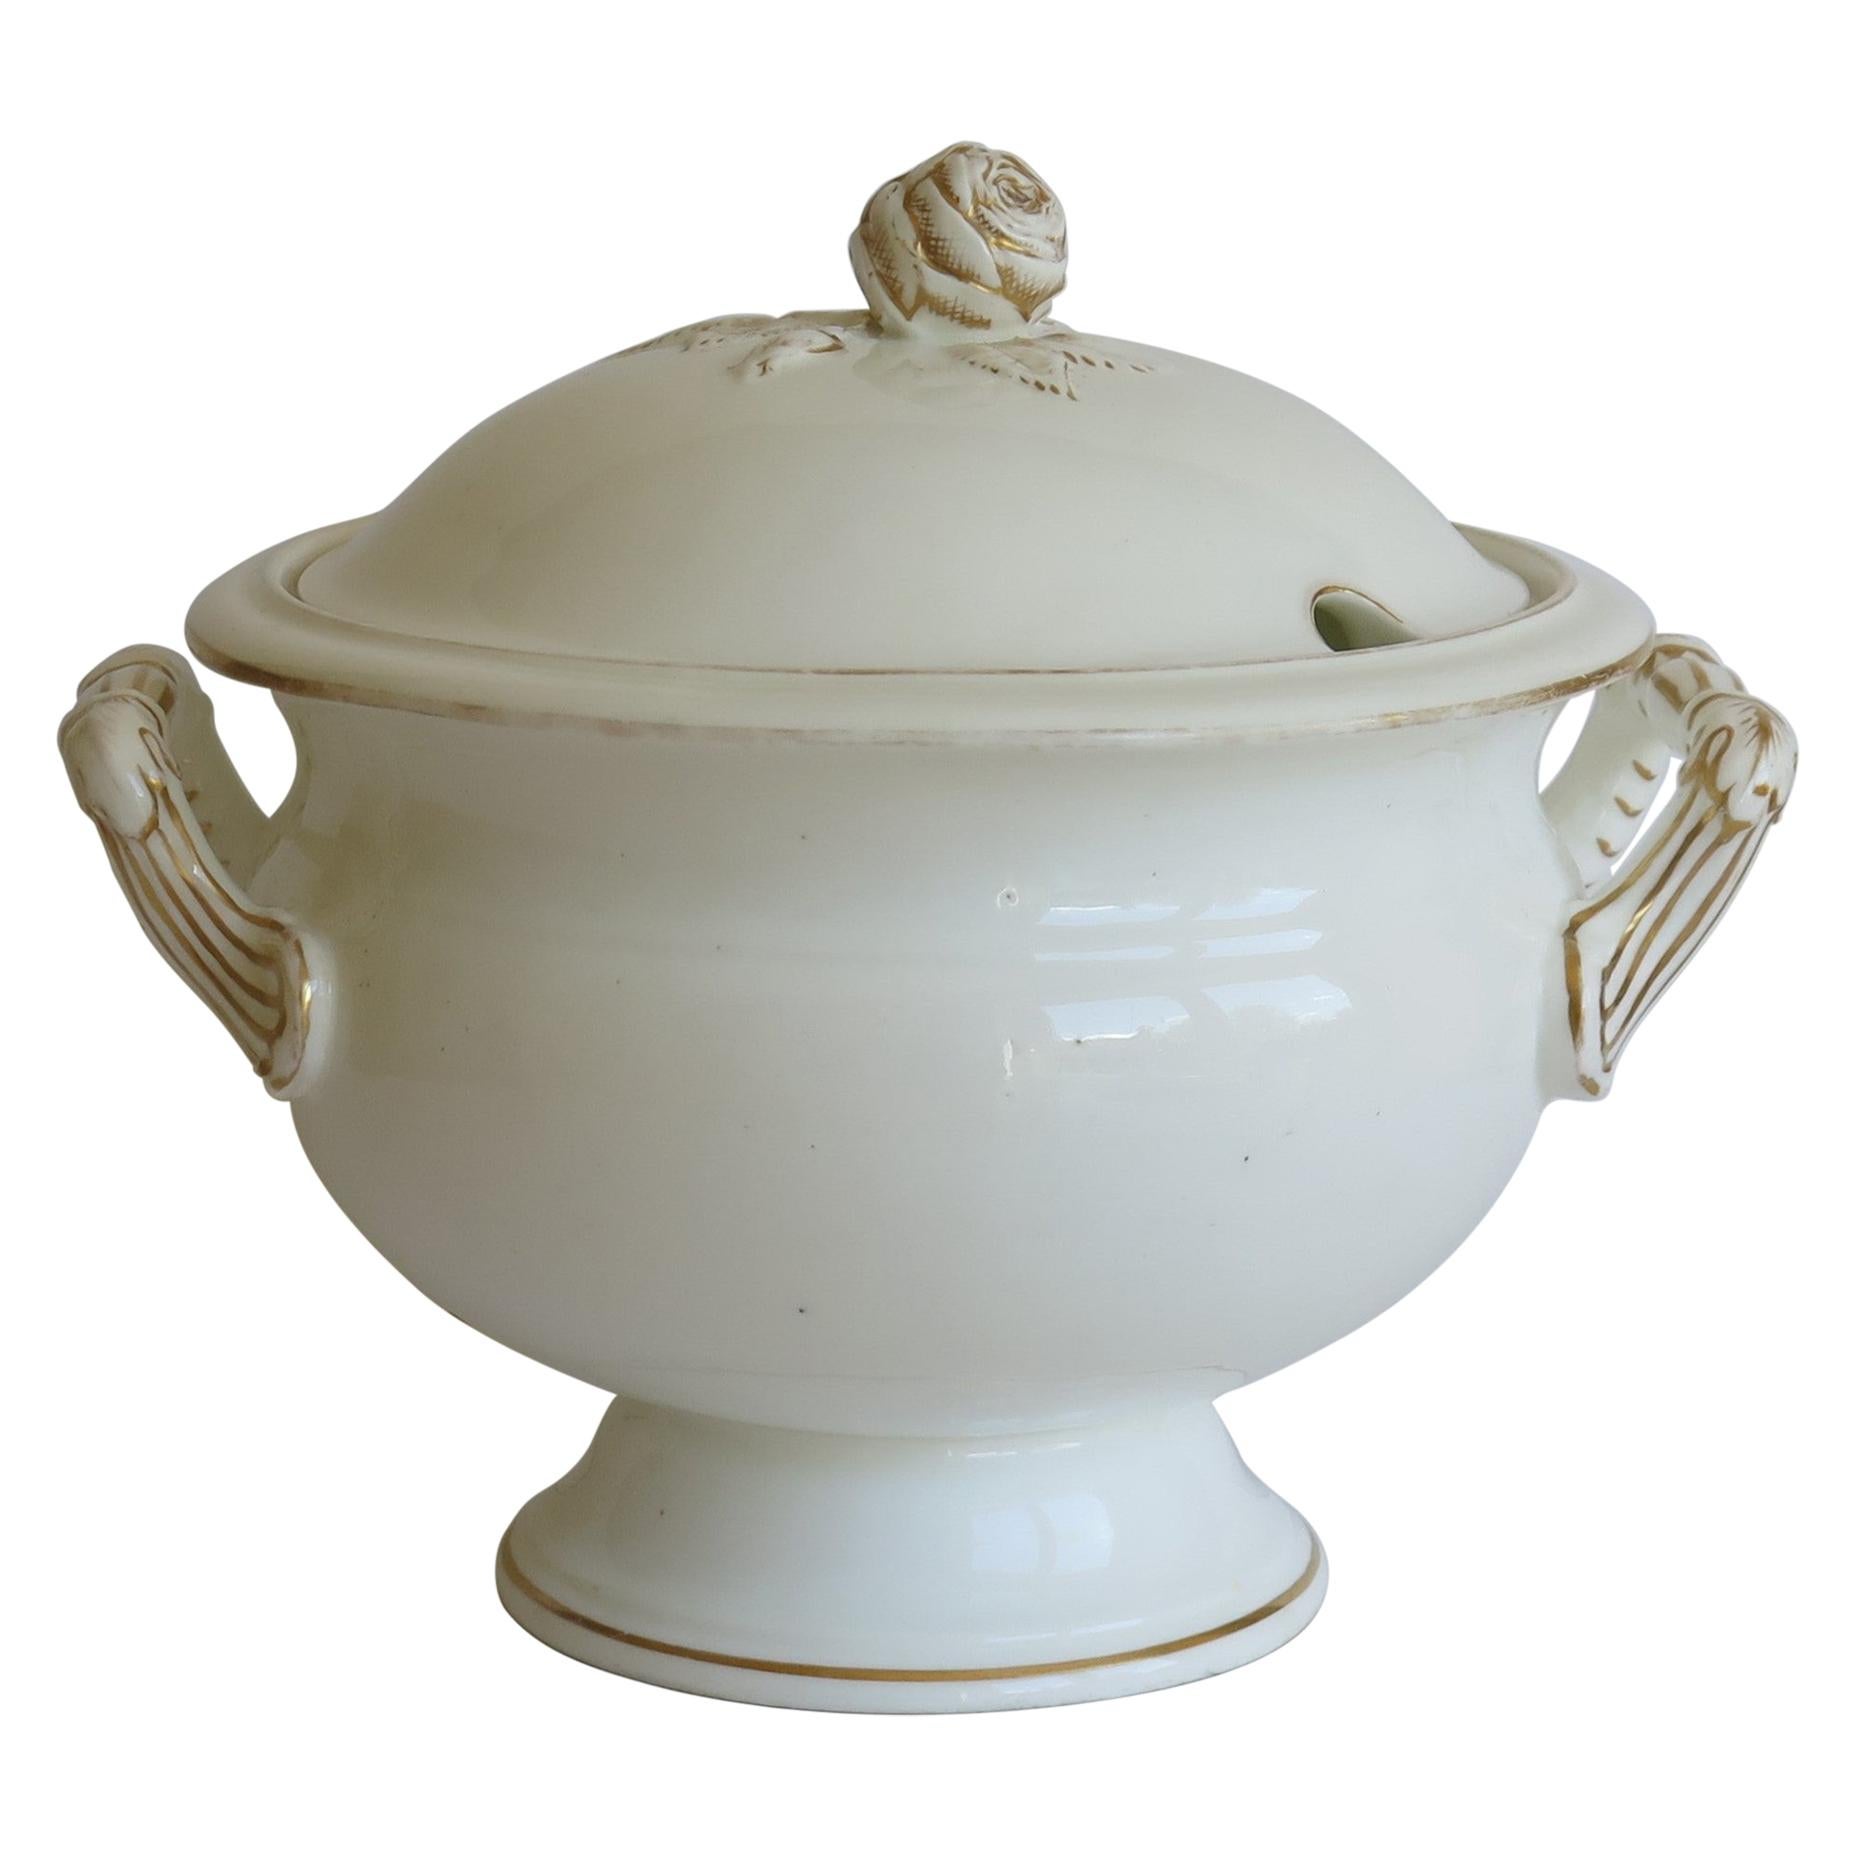 Il s'agit d'une très bonne grande soupière à couvercle, en porcelaine, que nous datons de la première moitié du XIXe siècle, vers 1830.

La soupière est bien empotée, avec une base circulaire sur pied et deux poignées latérales moulées. Le